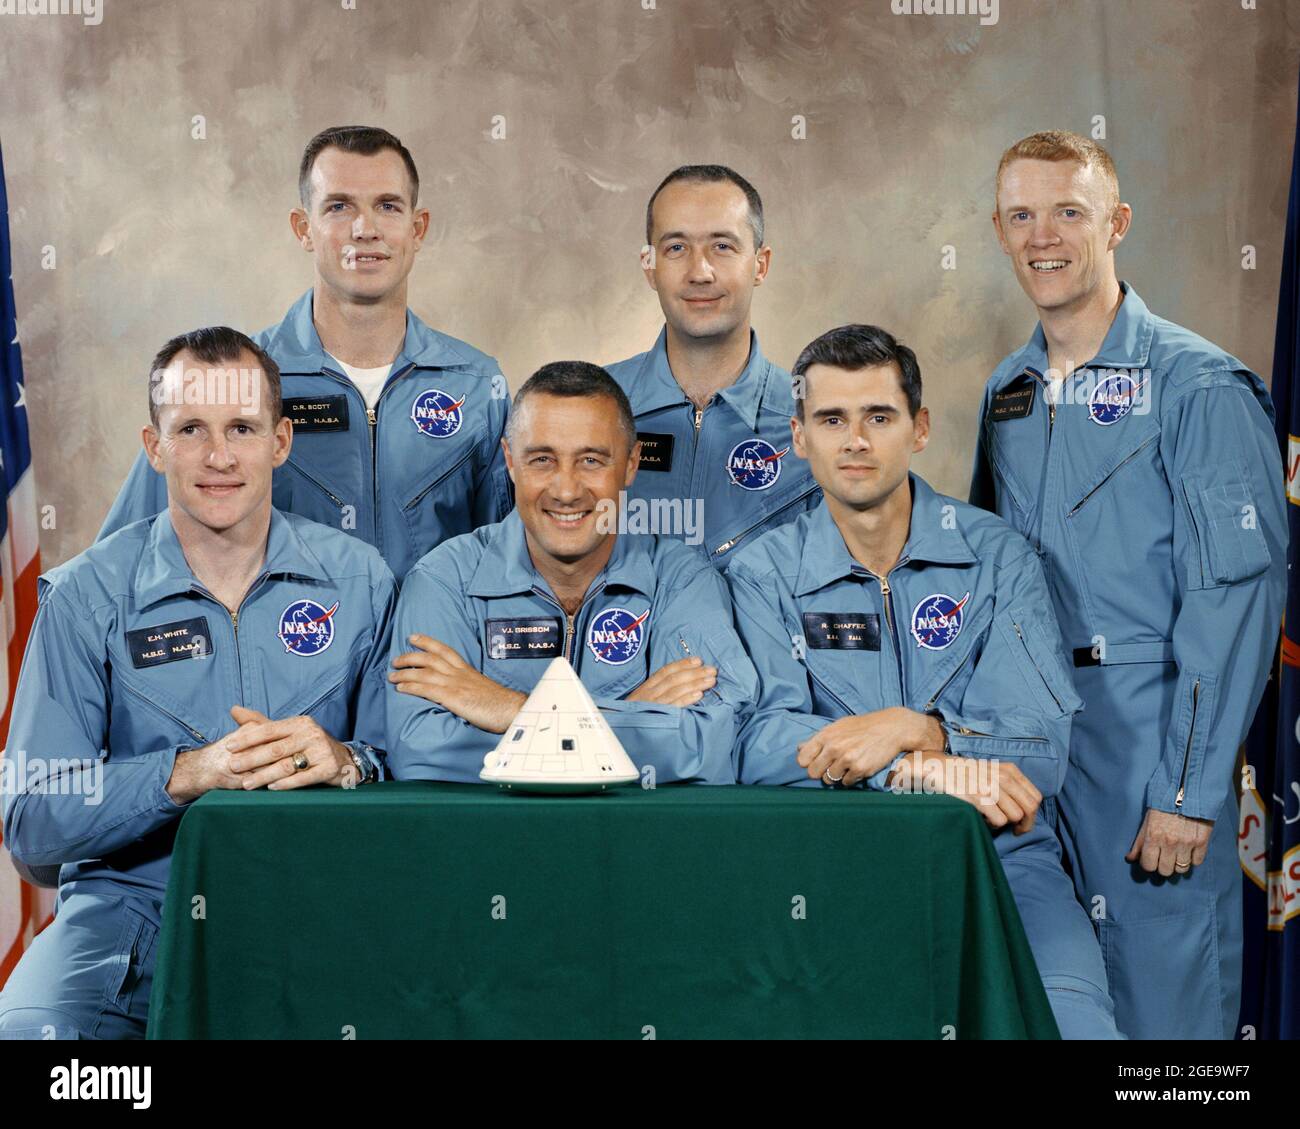 (1. April 1966) --- die National Aeronautics and Space Administration (NASA) hat diese Astronauten zur Hauptmannschaft des ersten bemannten Apollo-Weltraumfluges ernannt. Von links nach rechts sind Edward H. White II, Kommandomodulpilot; Virgil I. Grissom, Missionskommandant; und Roger B. Chaffee, Mondmodulpilot. In der zweiten Reihe sind die Apollo 1-Backup-Crew-Mitglieder, die Astronauten David R. Scott, James A. McDivitt und Russell L. Schweickart. ANMERKUNG DER REDAKTION: Die Astronauten Grissom, White und Chaffee verloren ihr Leben bei einem Brand am 27. Januar 1967 im Apollo CM während der Tests in Cape Canaveral. McDivitt, Scott und Sch Stockfoto